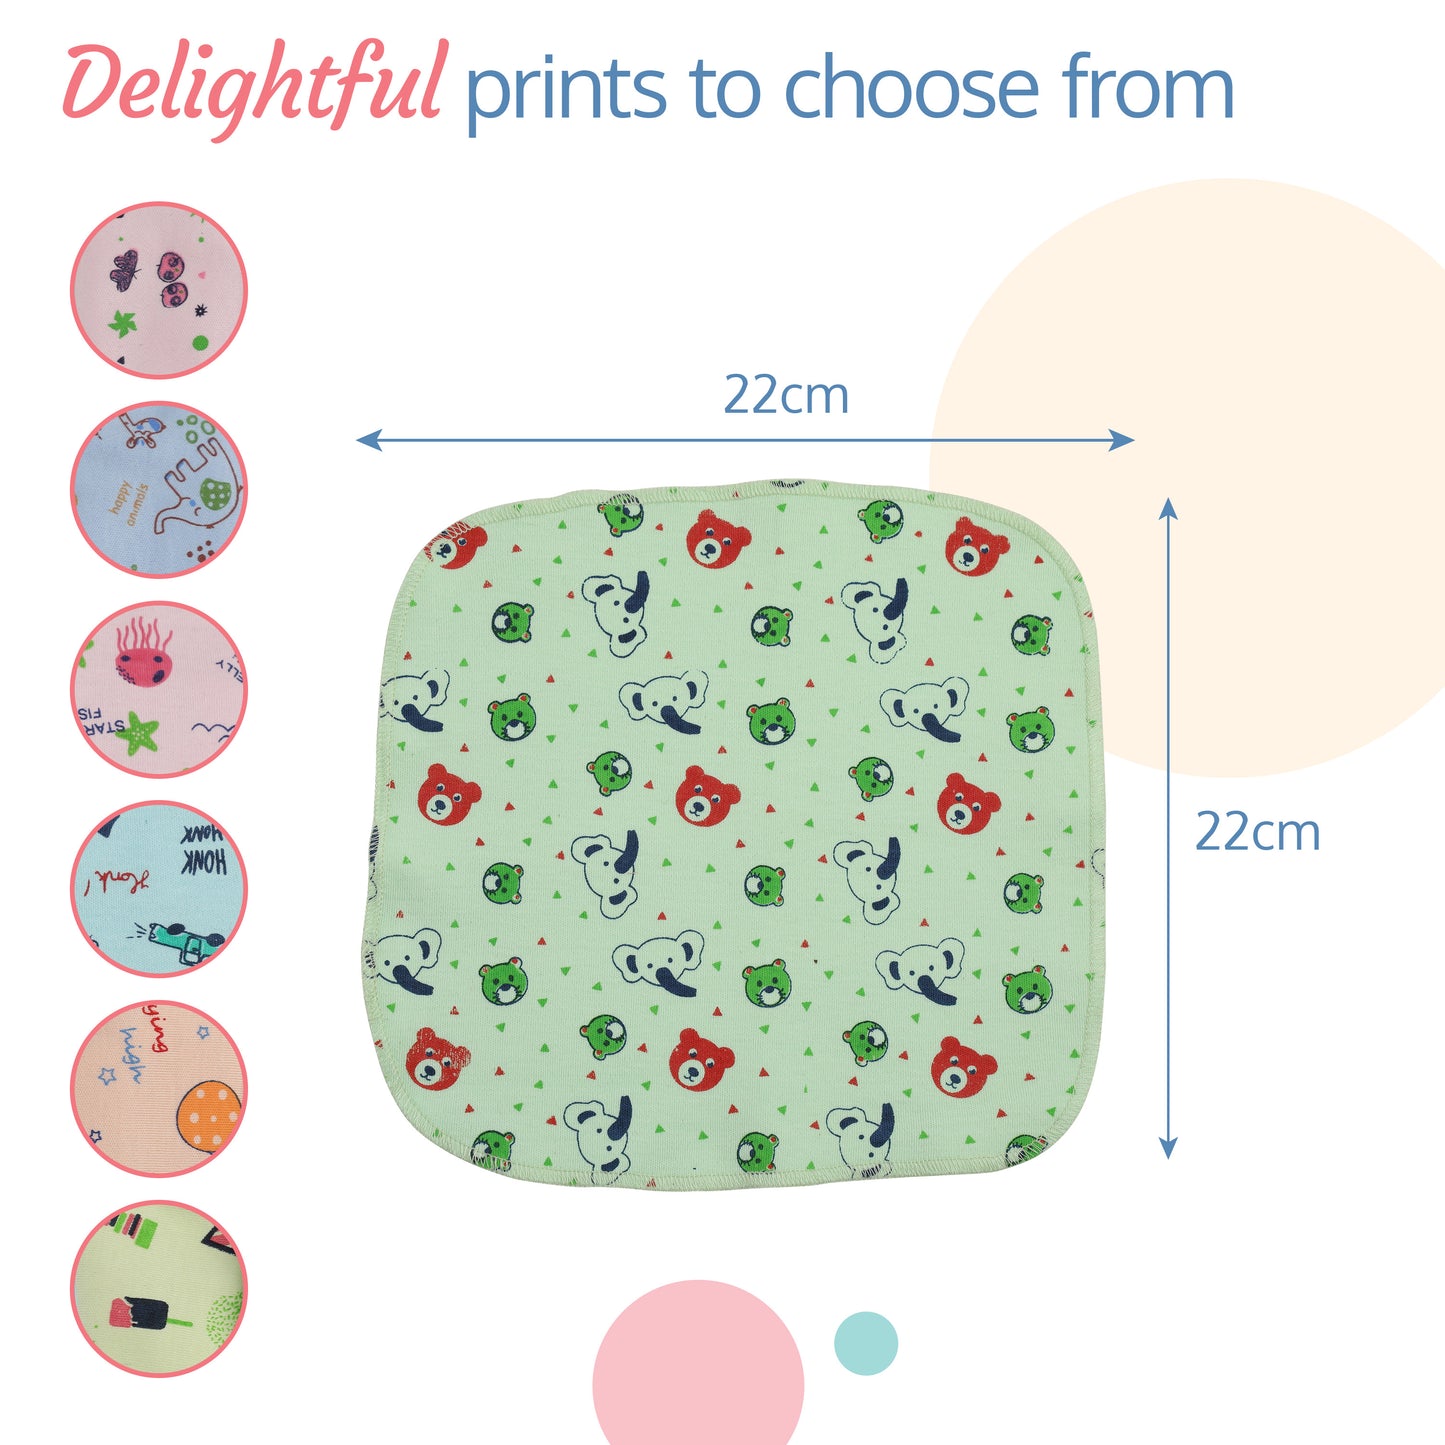 Premium Baby Washcloths, 7 Pcs, Starfish Print